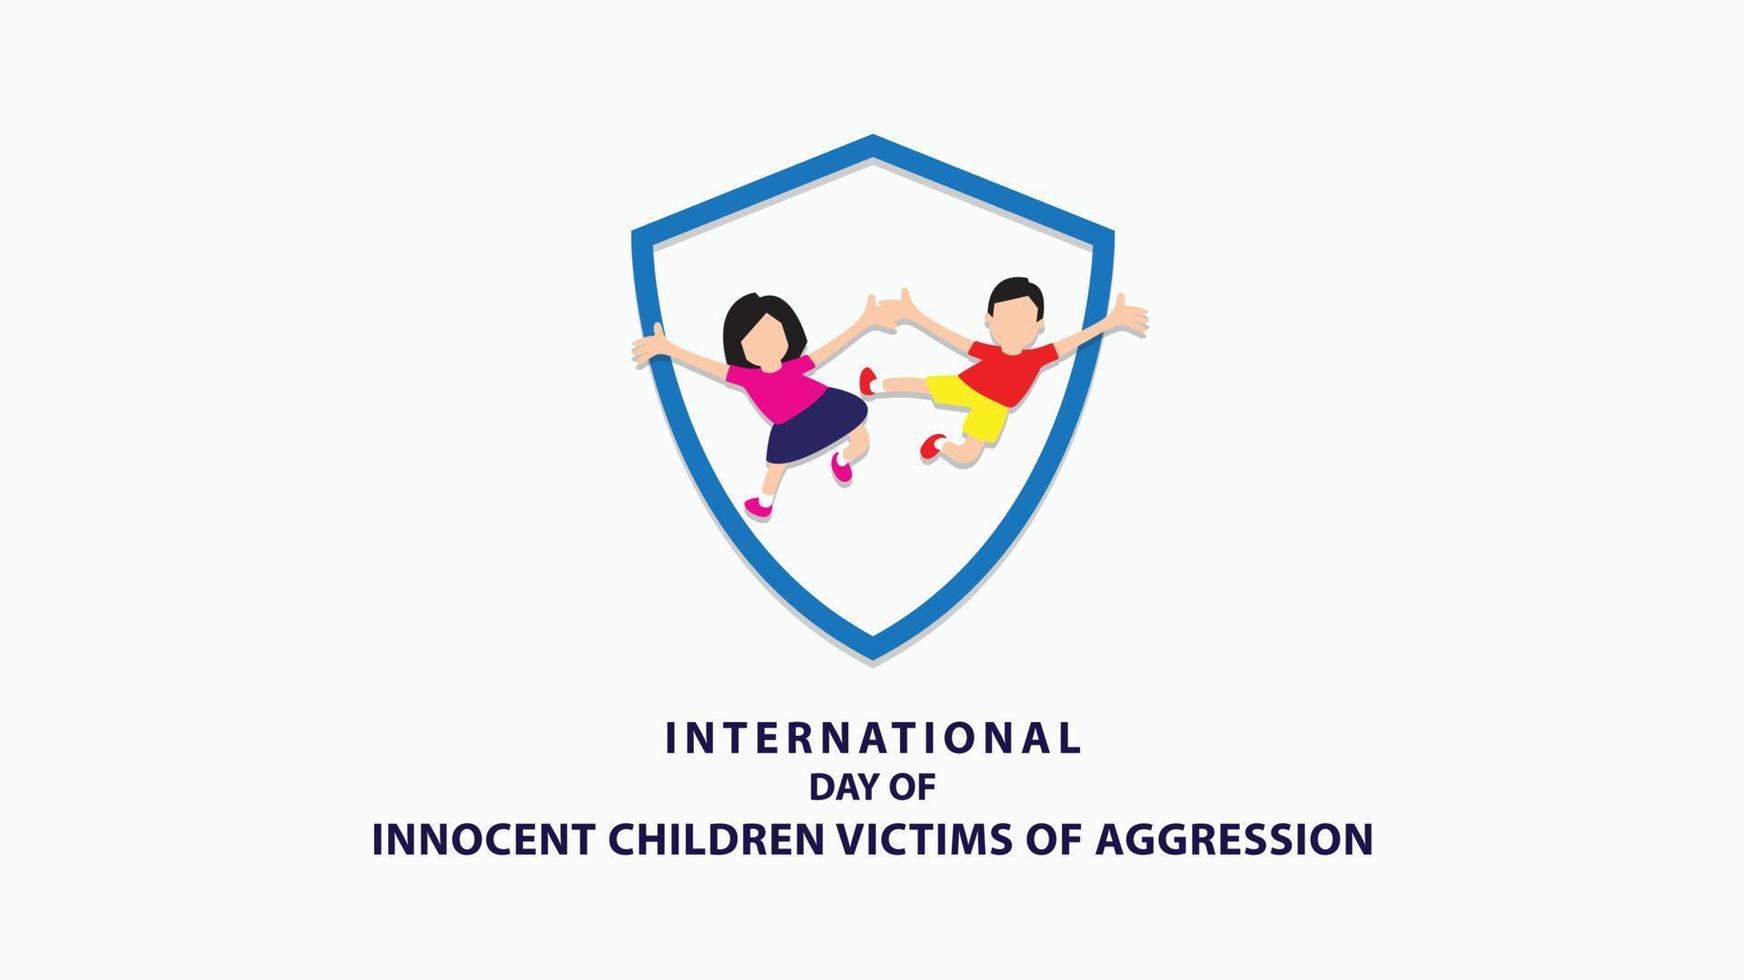 dia internacional das crianças inocentes vítimas de agressão. ilustração vetorial vetor